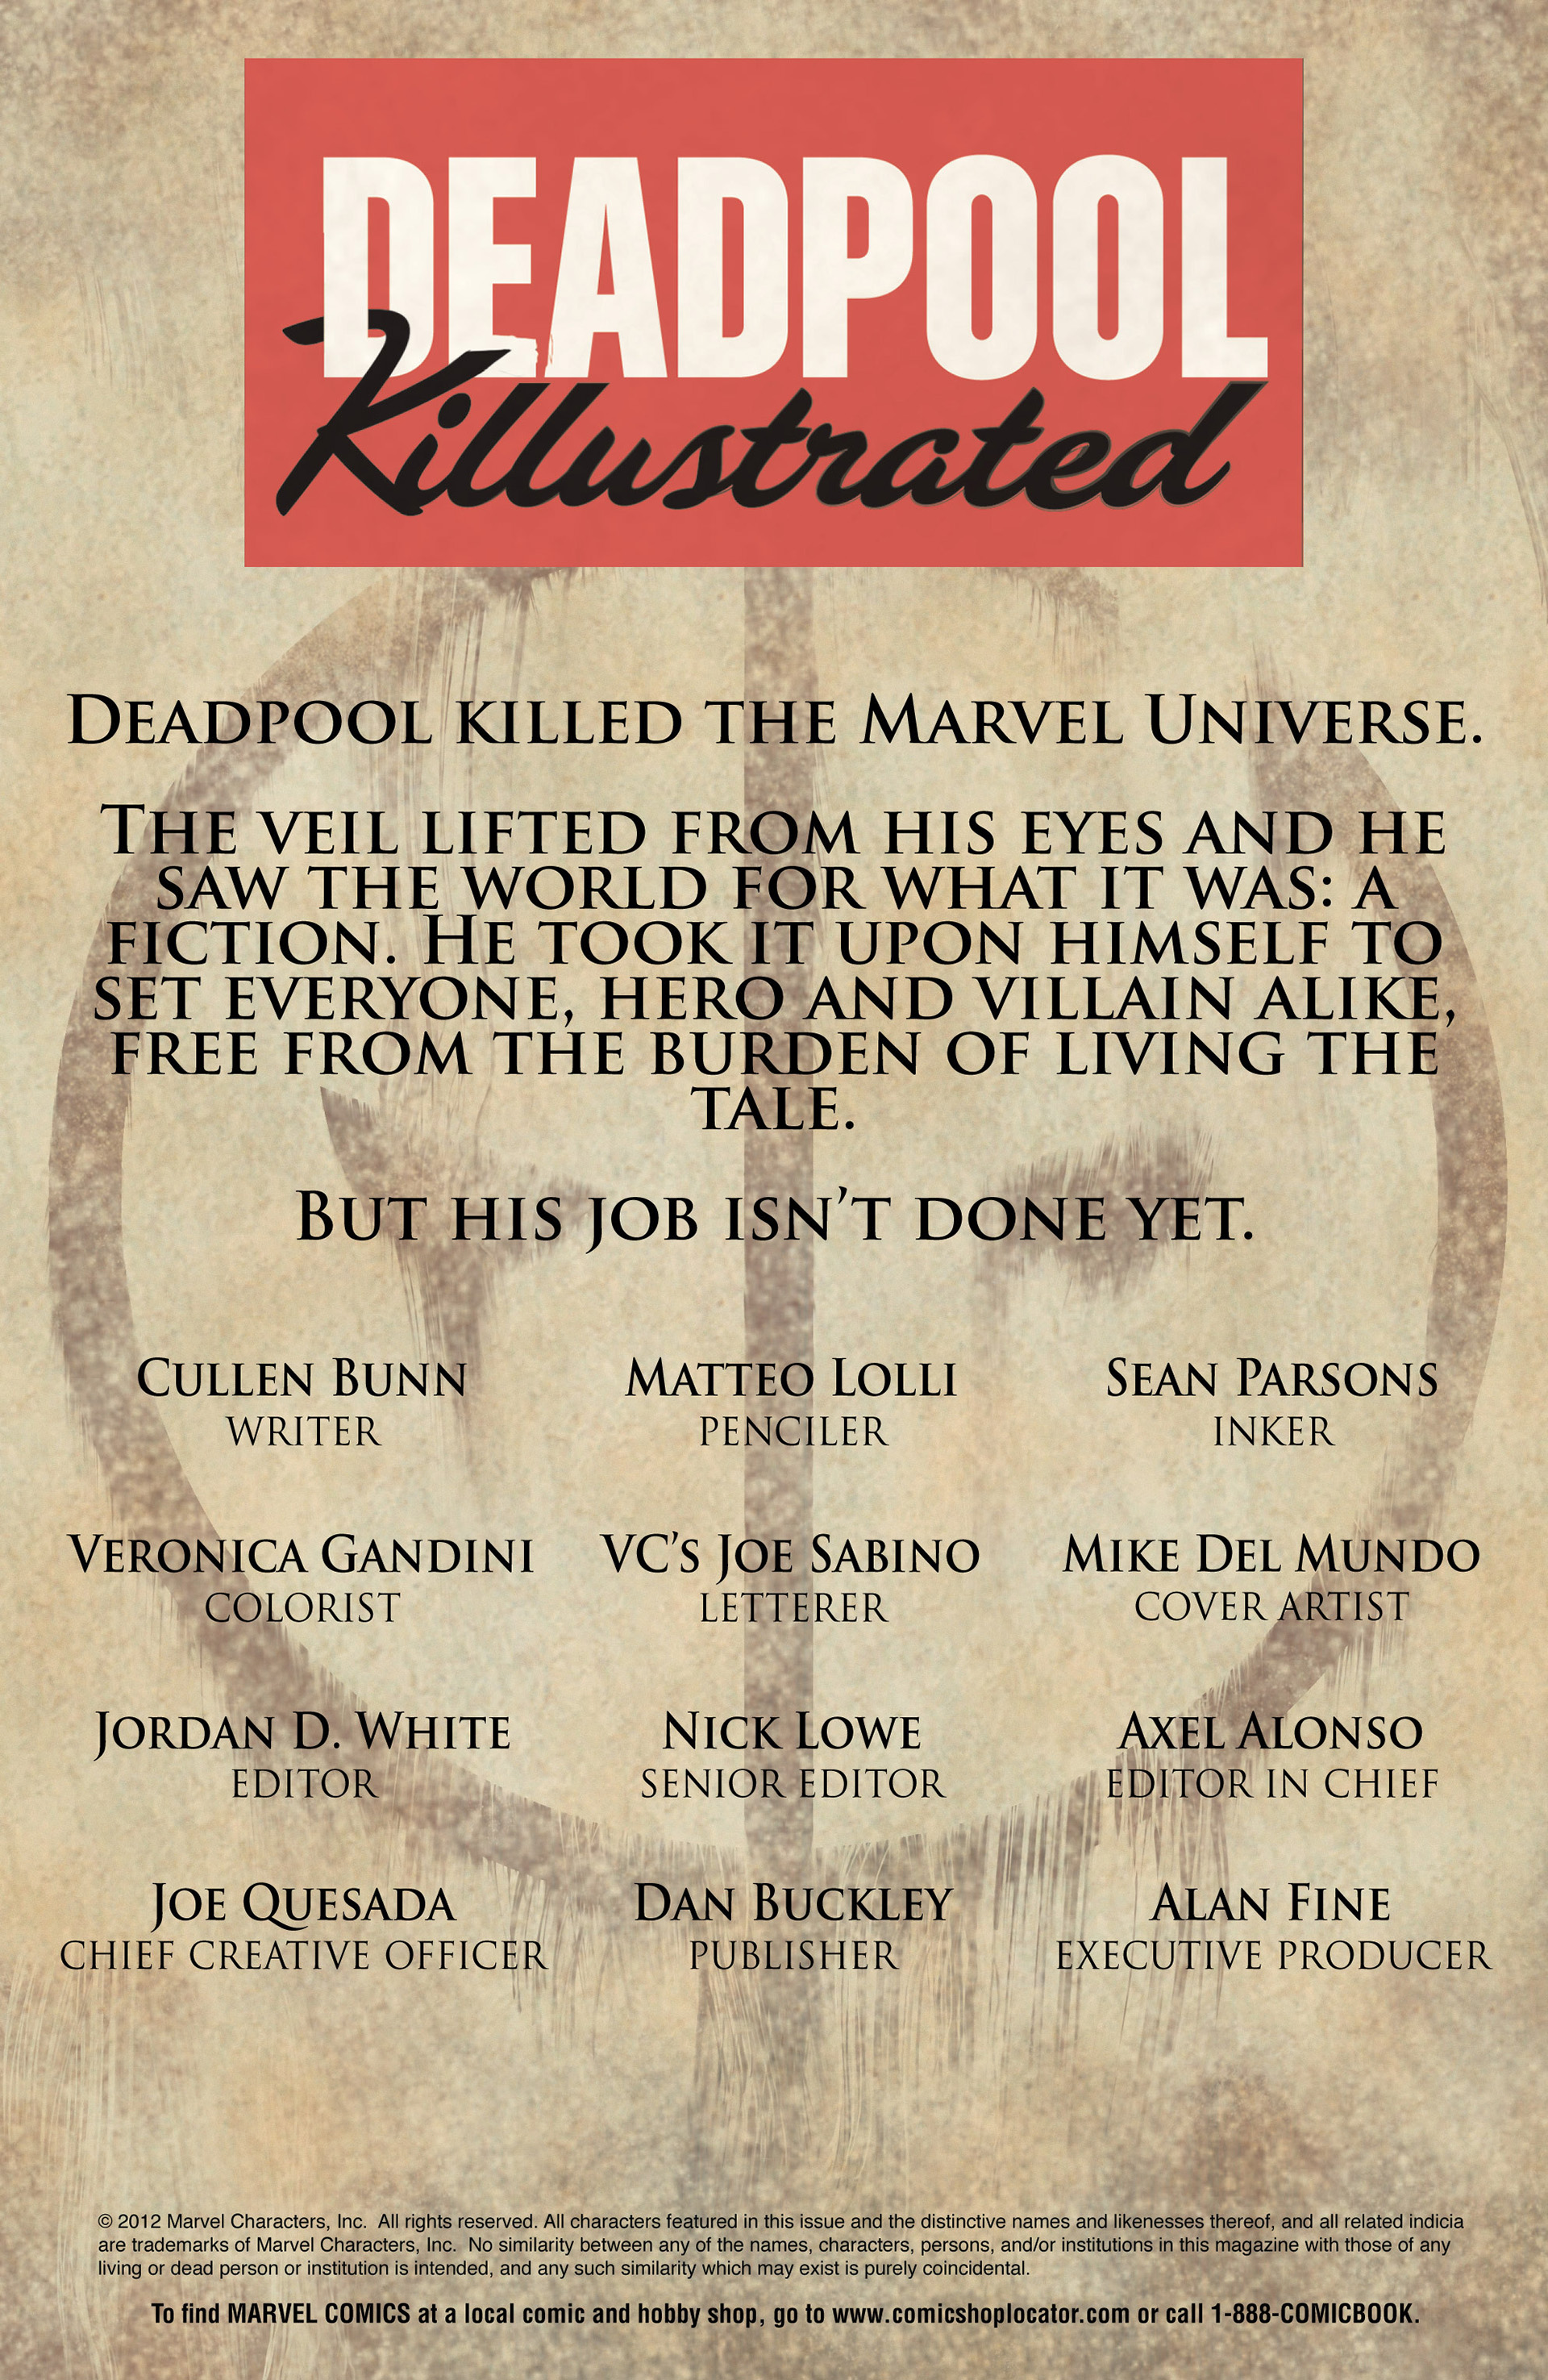 Read online Deadpool Killustrated comic -  Issue #1 - 4